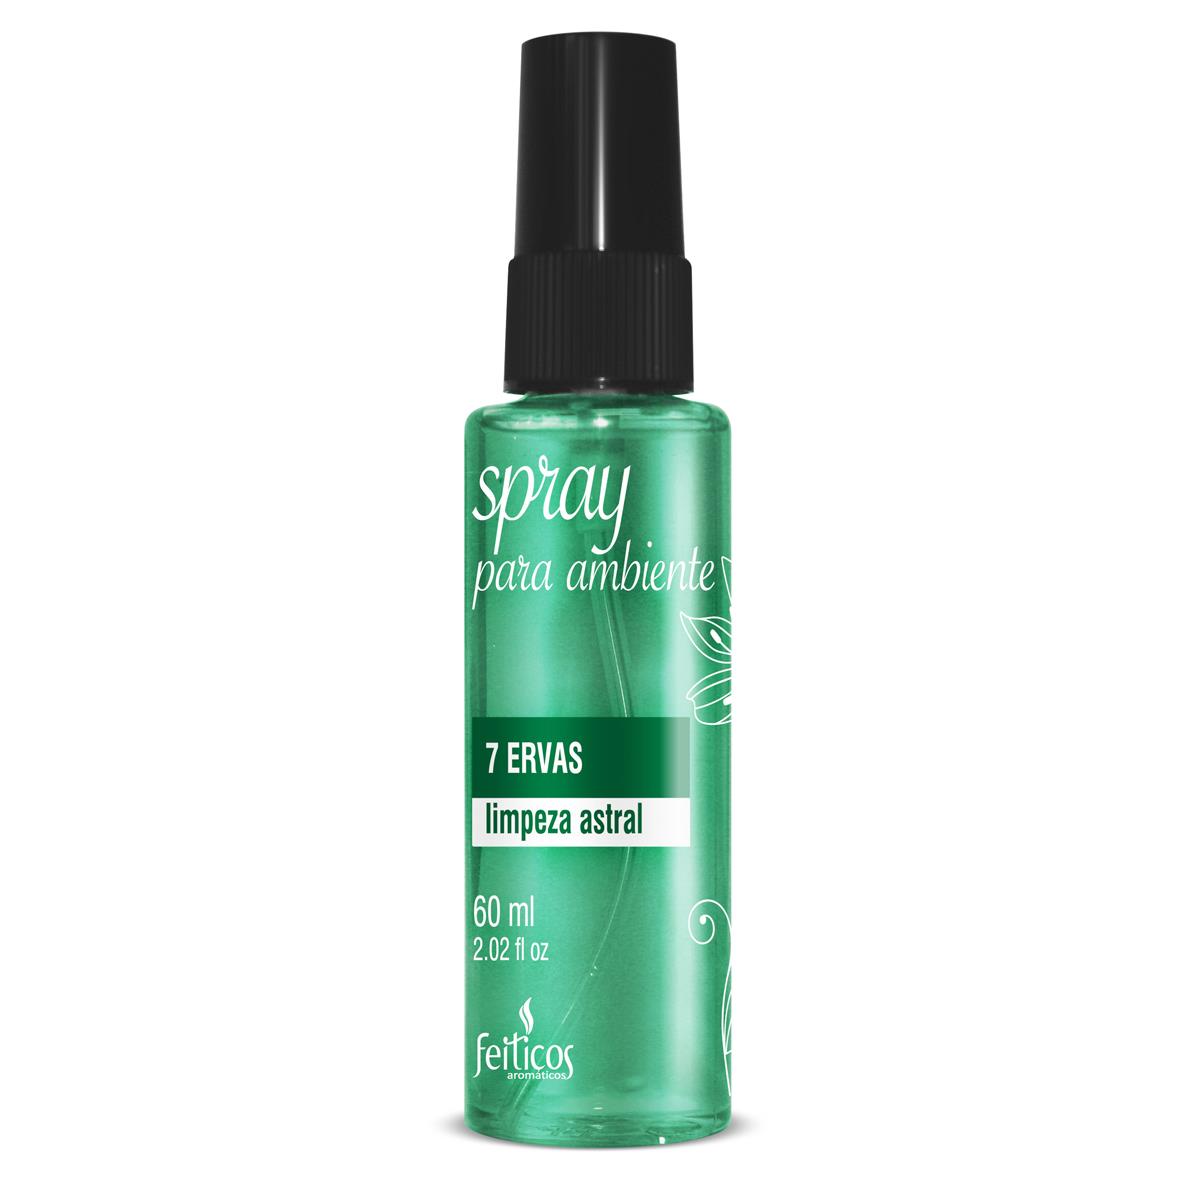 Spray para Ambiente 7 Ervas Limpeza Astral 60ml Feitiços